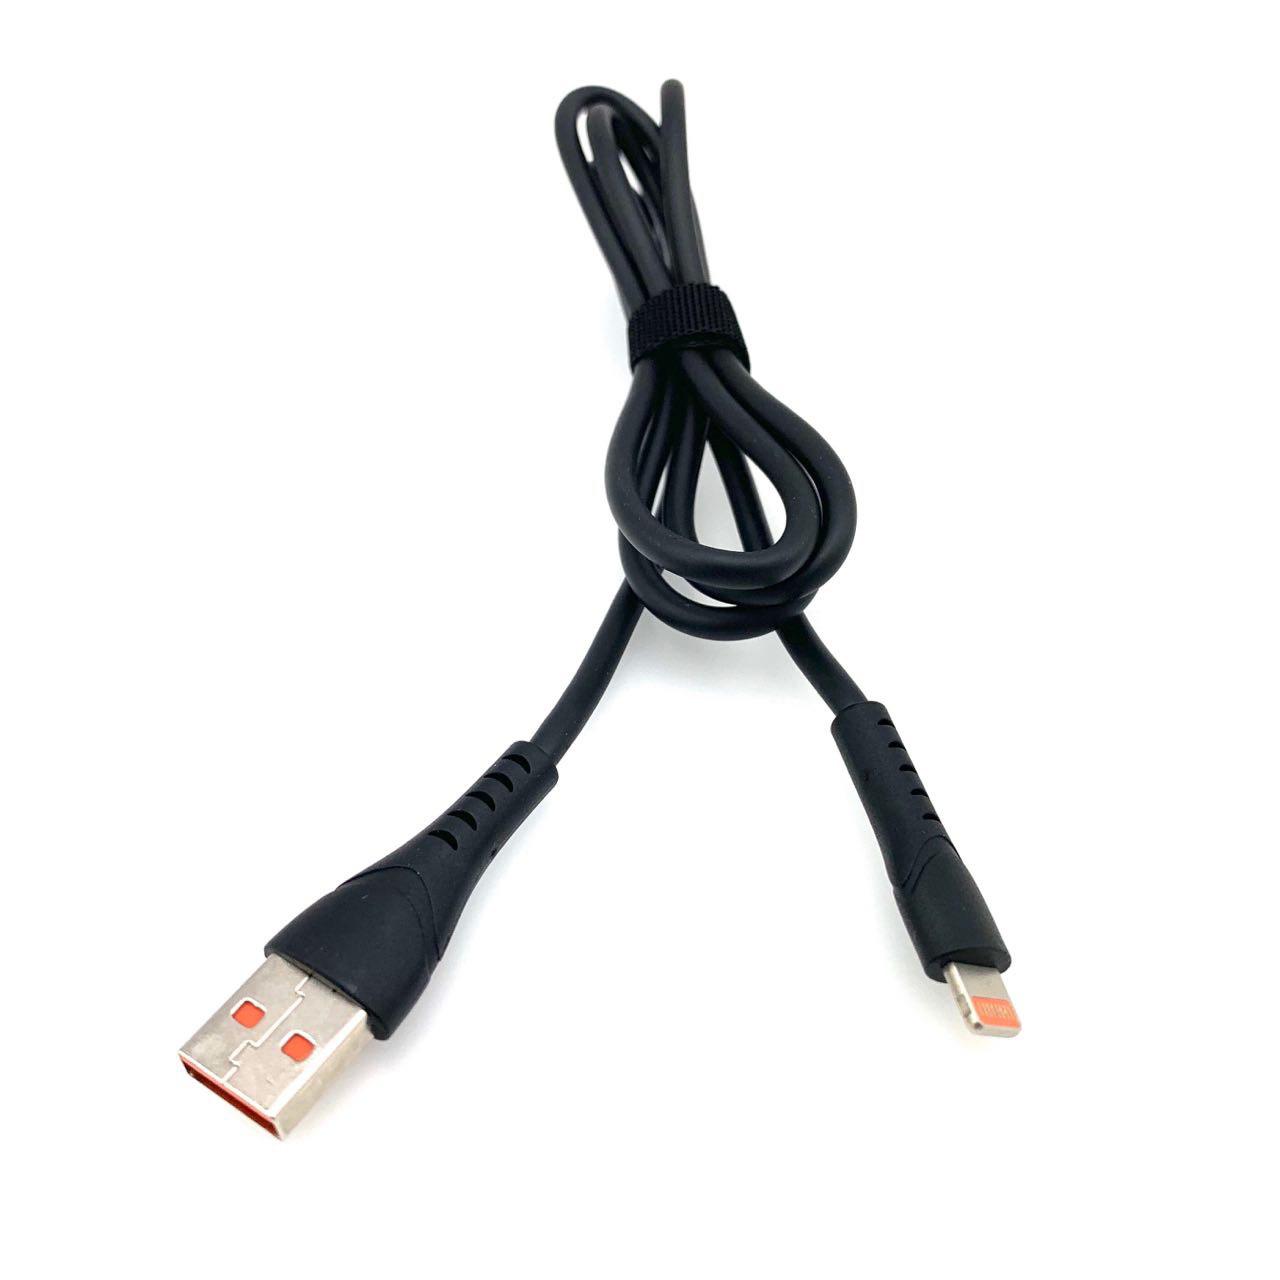 USB Дата-кабель "G03" APPLE Lightning 8-pin силиконовый 1 метр чёрный, оранжевые контакты.